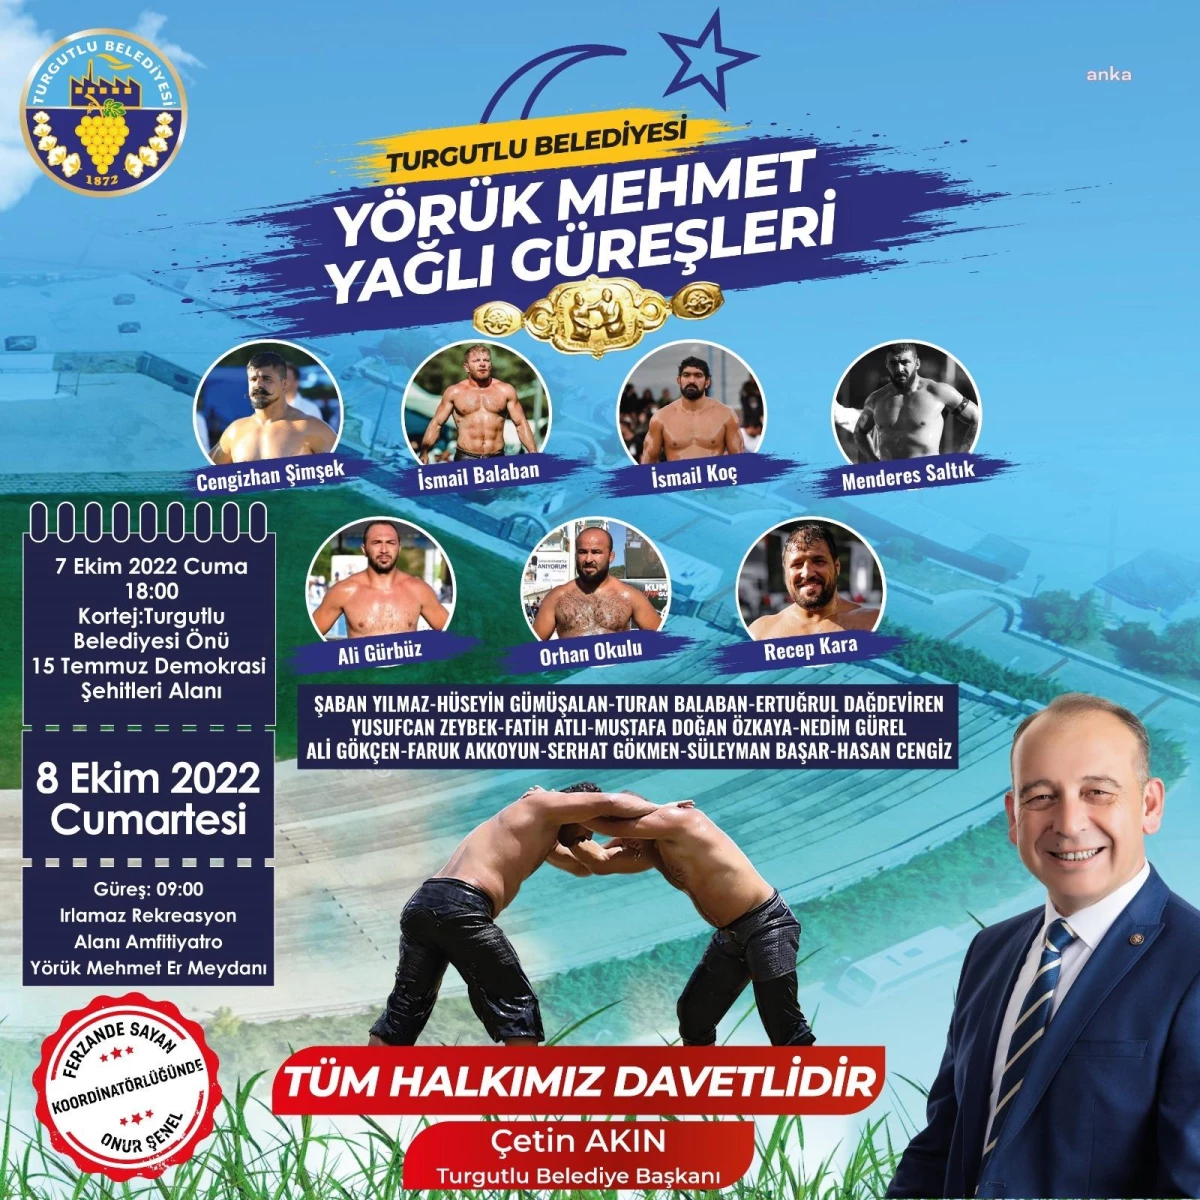 Manisa yerel haberi... Turgutlu Belediyesi Yörük Mehmet Yağlı Güreşleri Başlıyor